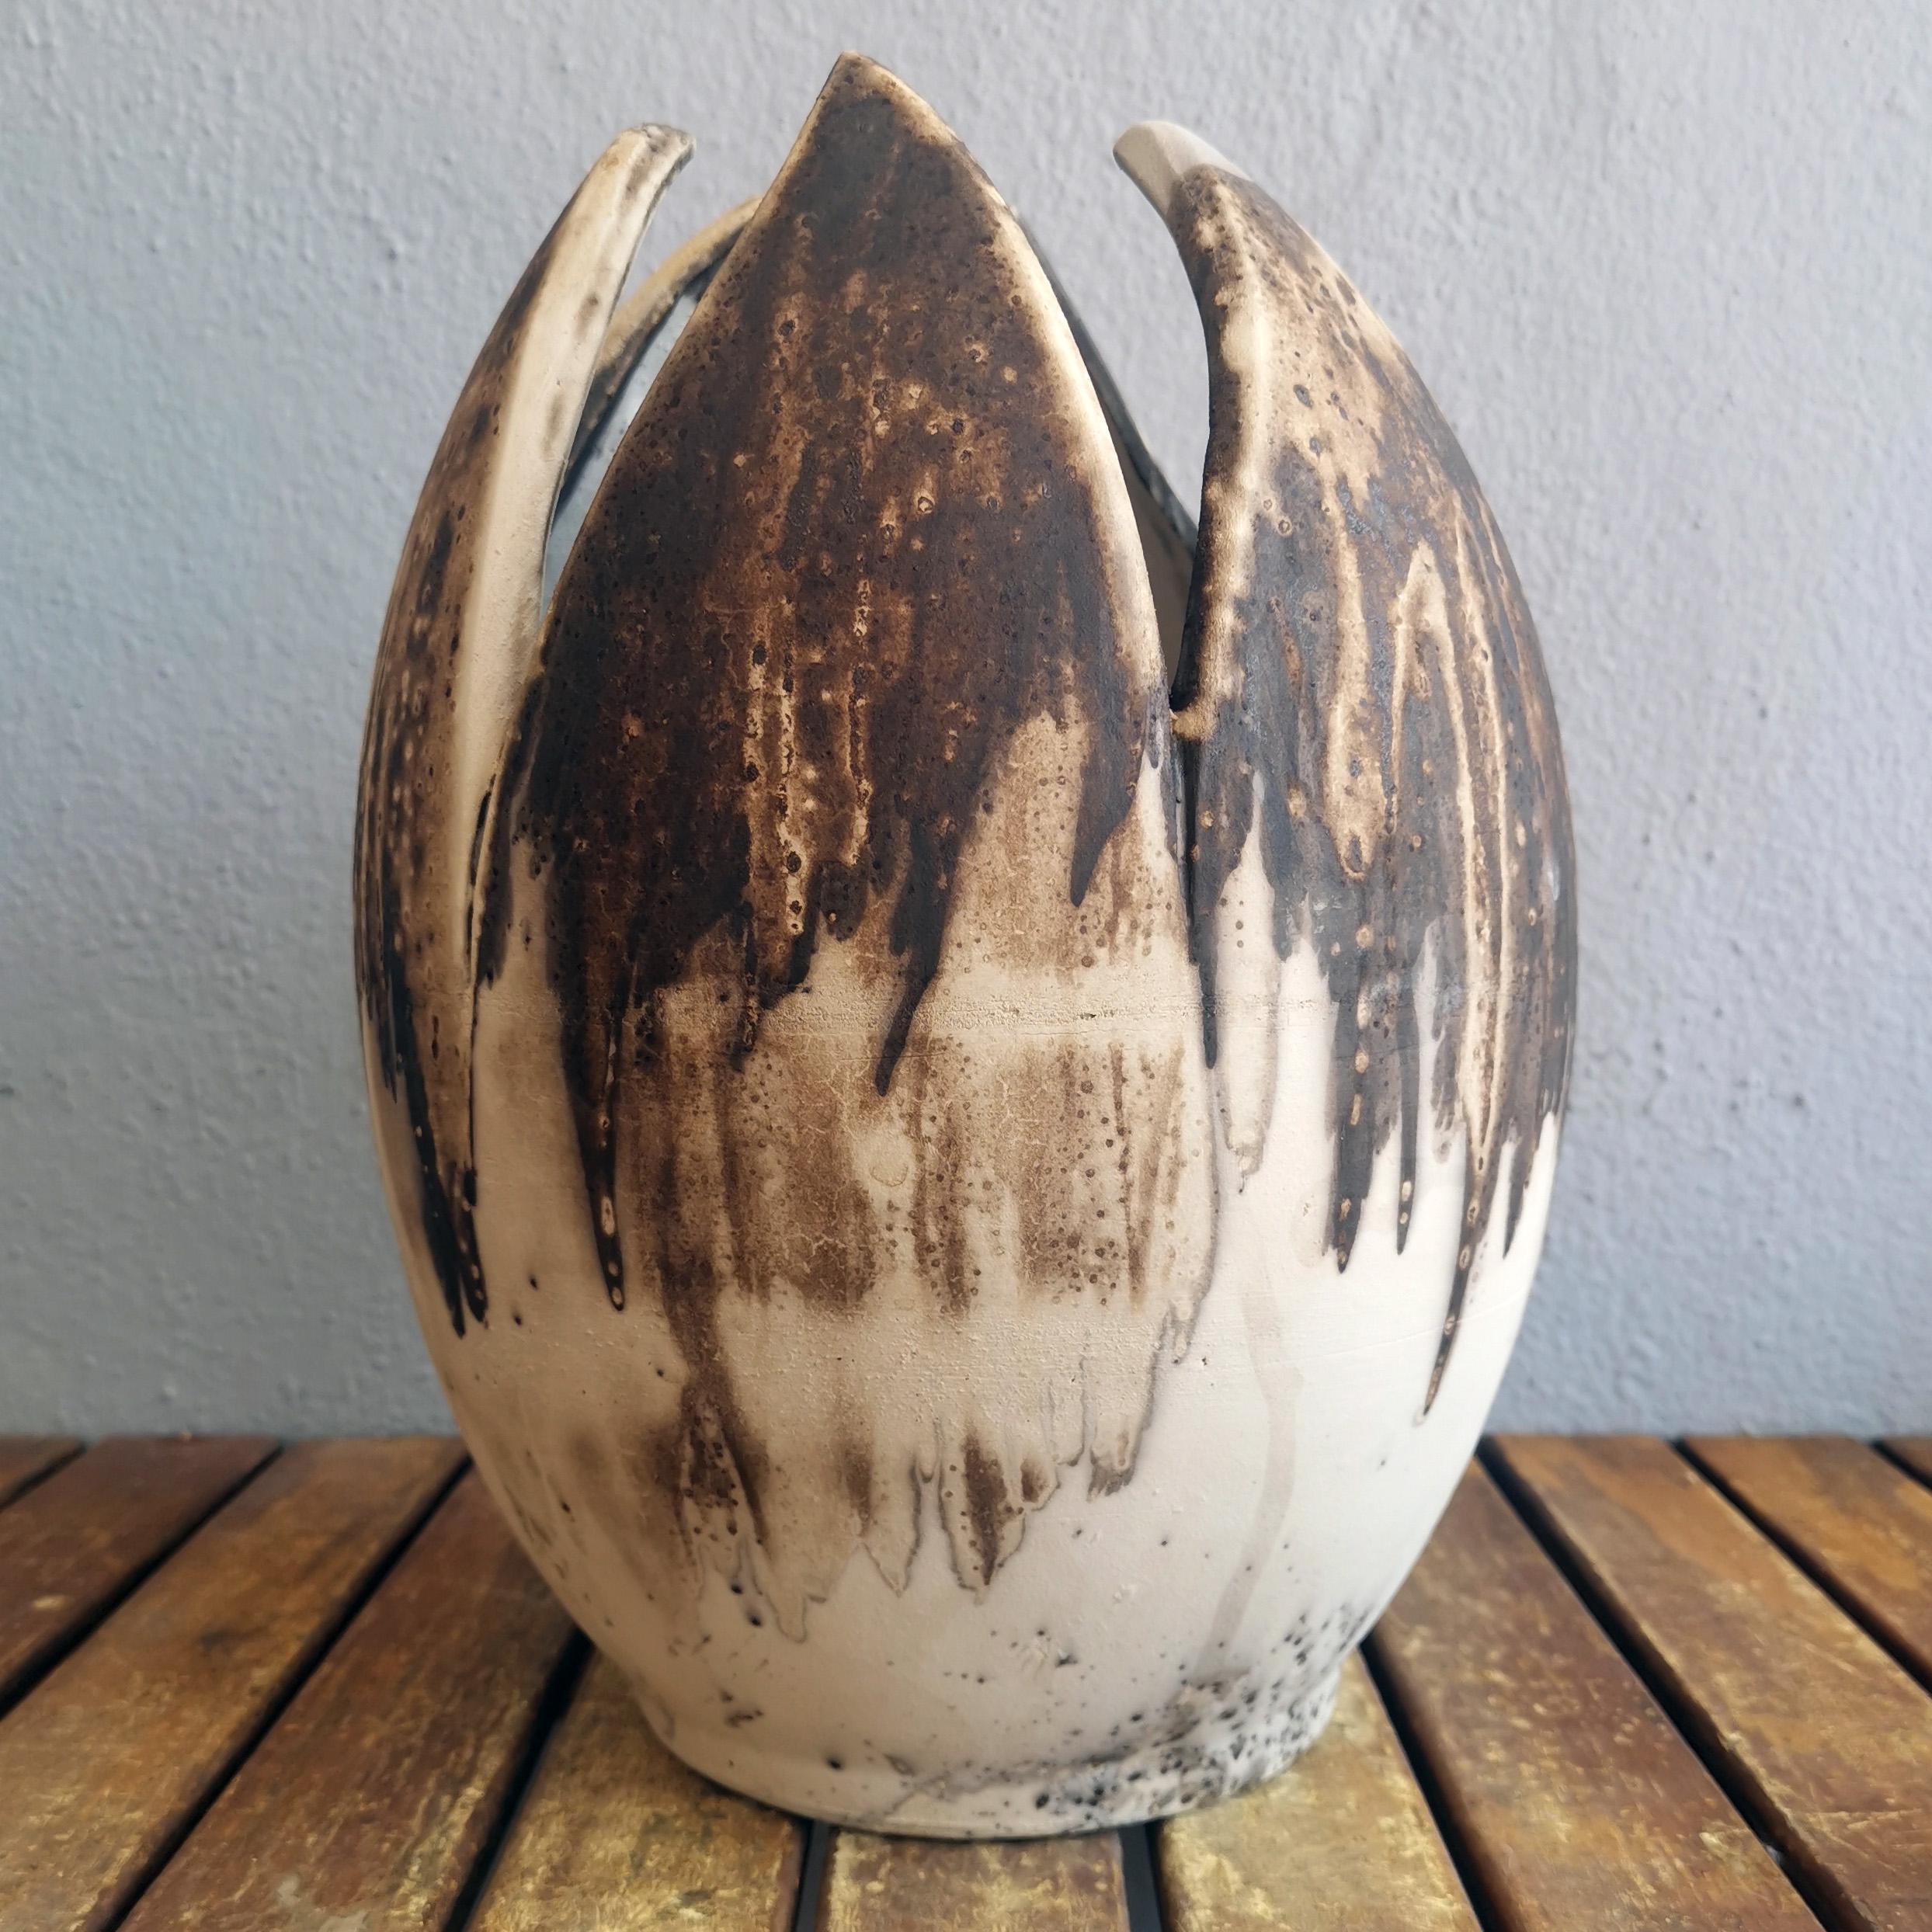 Dies ist eine Vorbestellung

Ich bin stolz darauf, meine neueste Vasenform aus der Art Series vorzustellen: Die Blumenvase.

Die Form der RAAQUU Flower Vase ist von der Tulpenblüte inspiriert und verleiht der ovalen Vase mit 6 halben